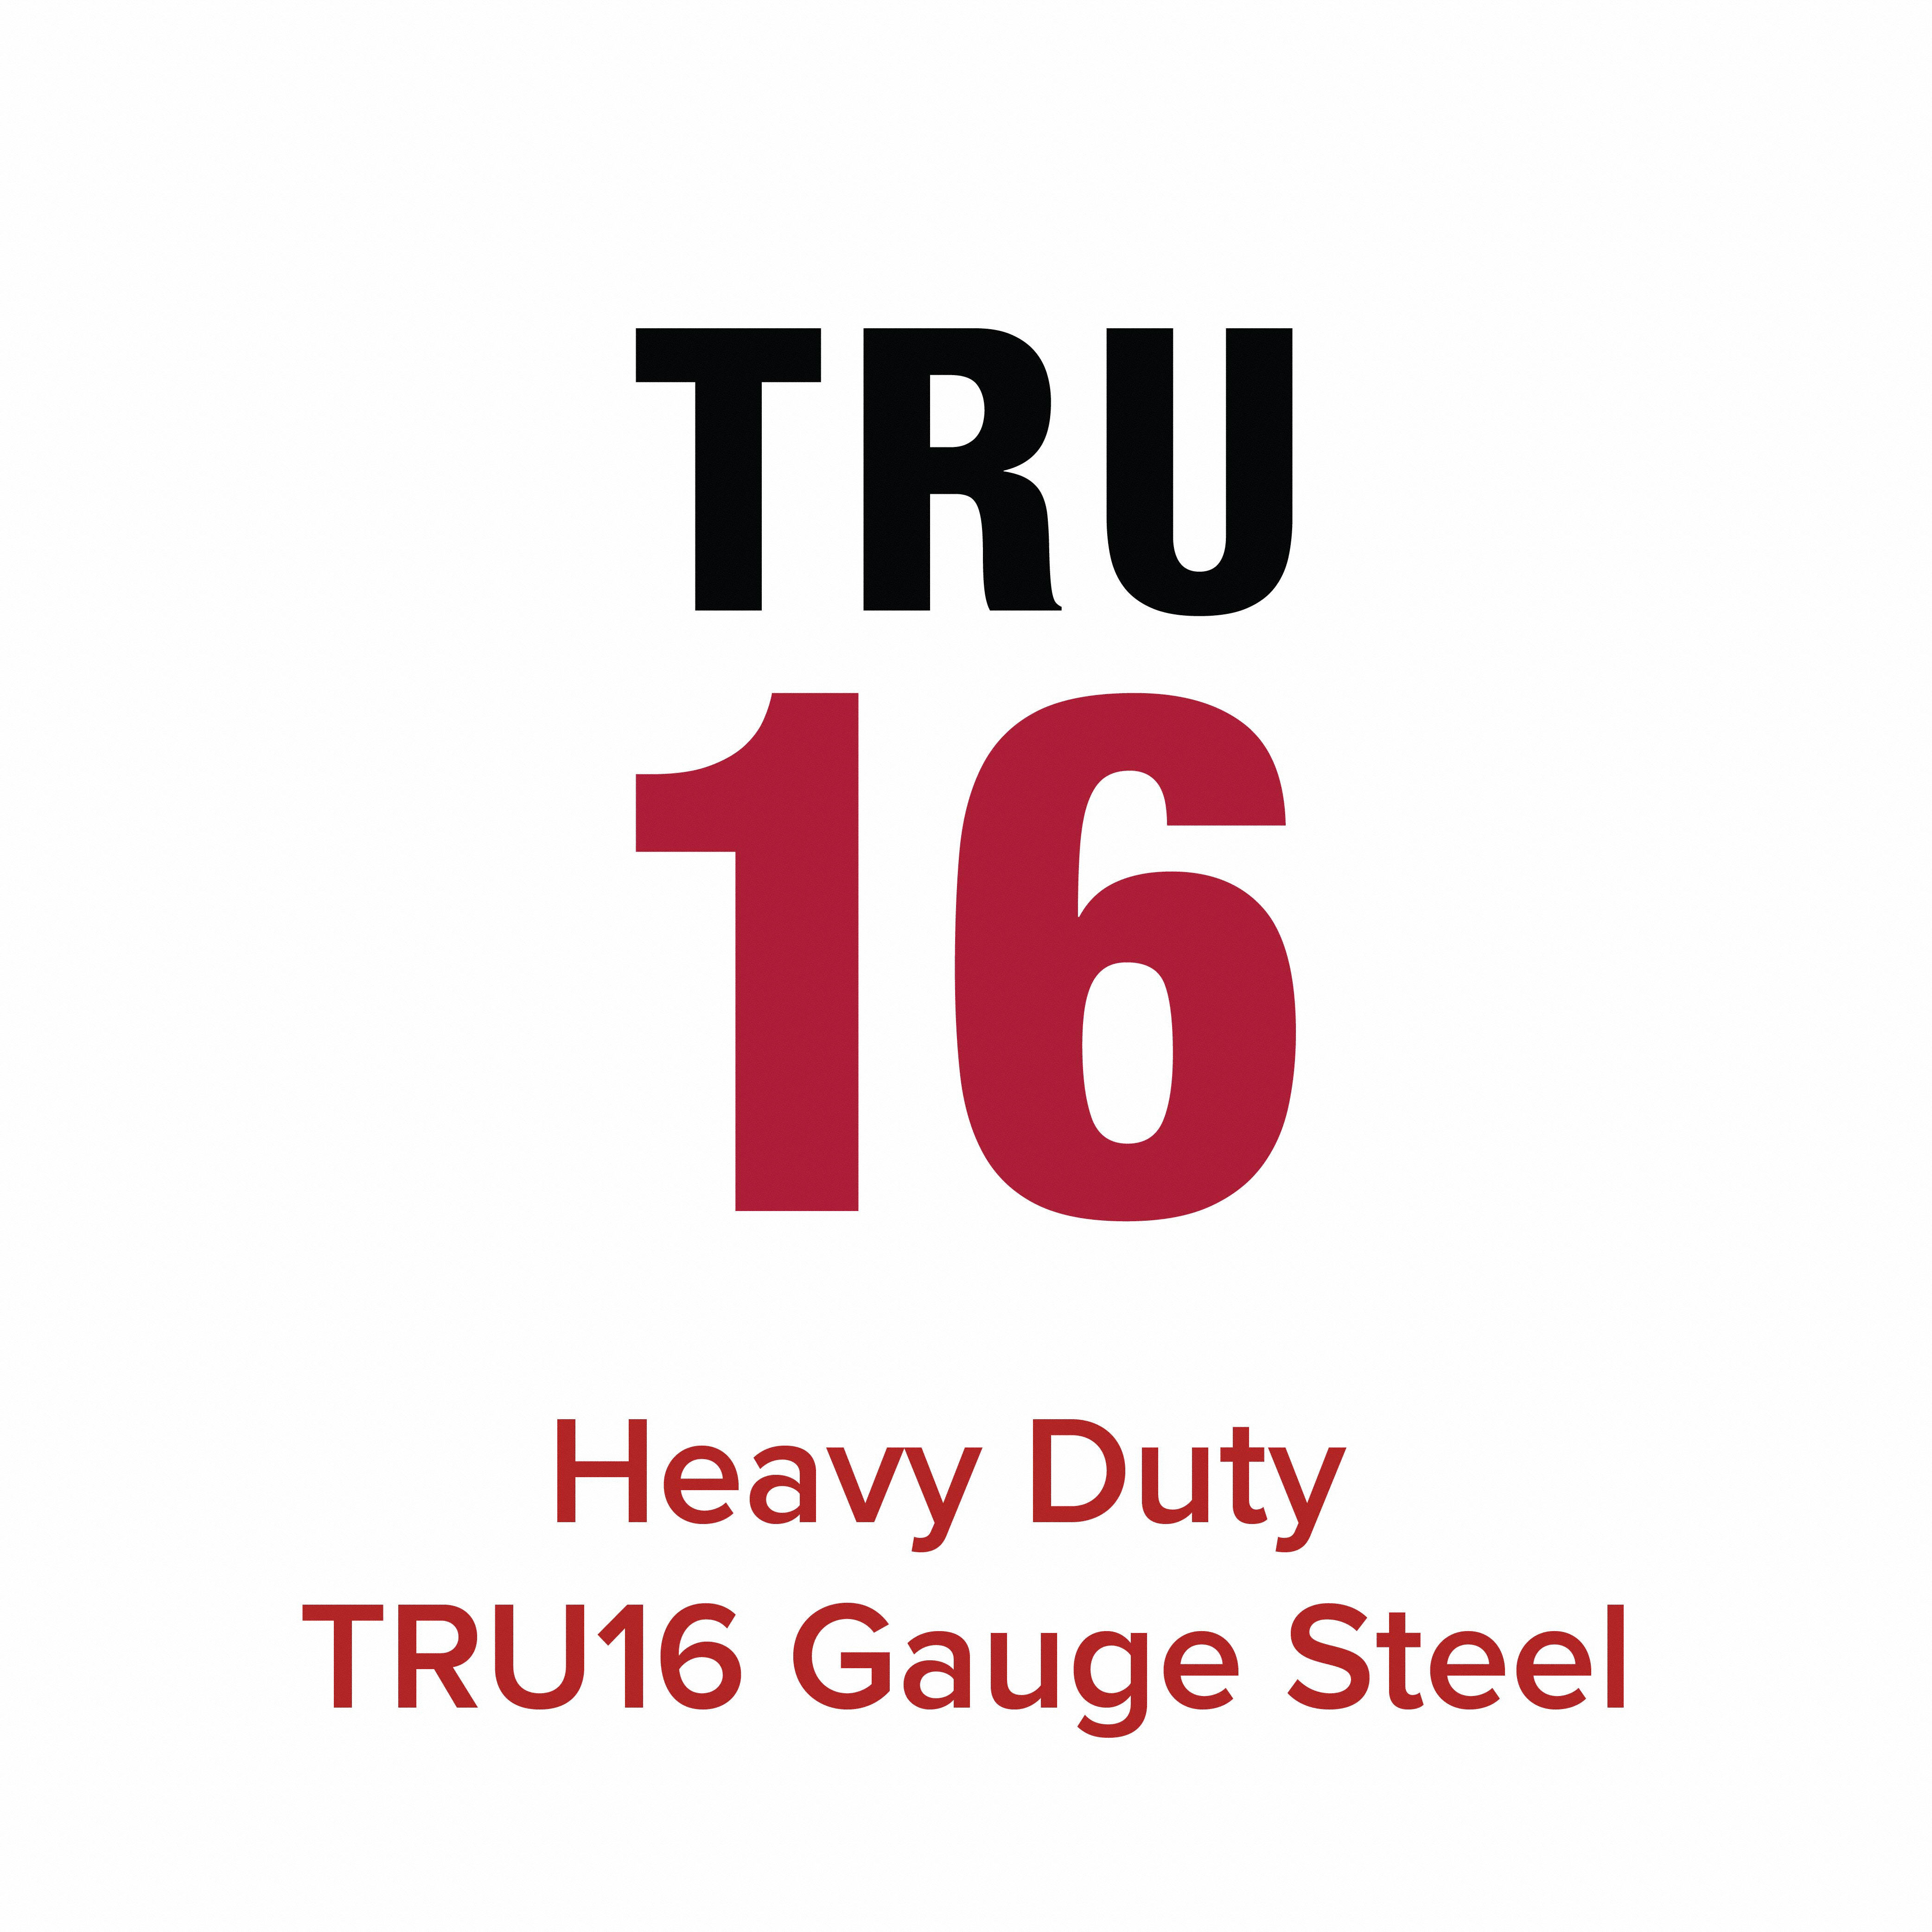 Heavy Duty 16 Gauge Stainless Steel